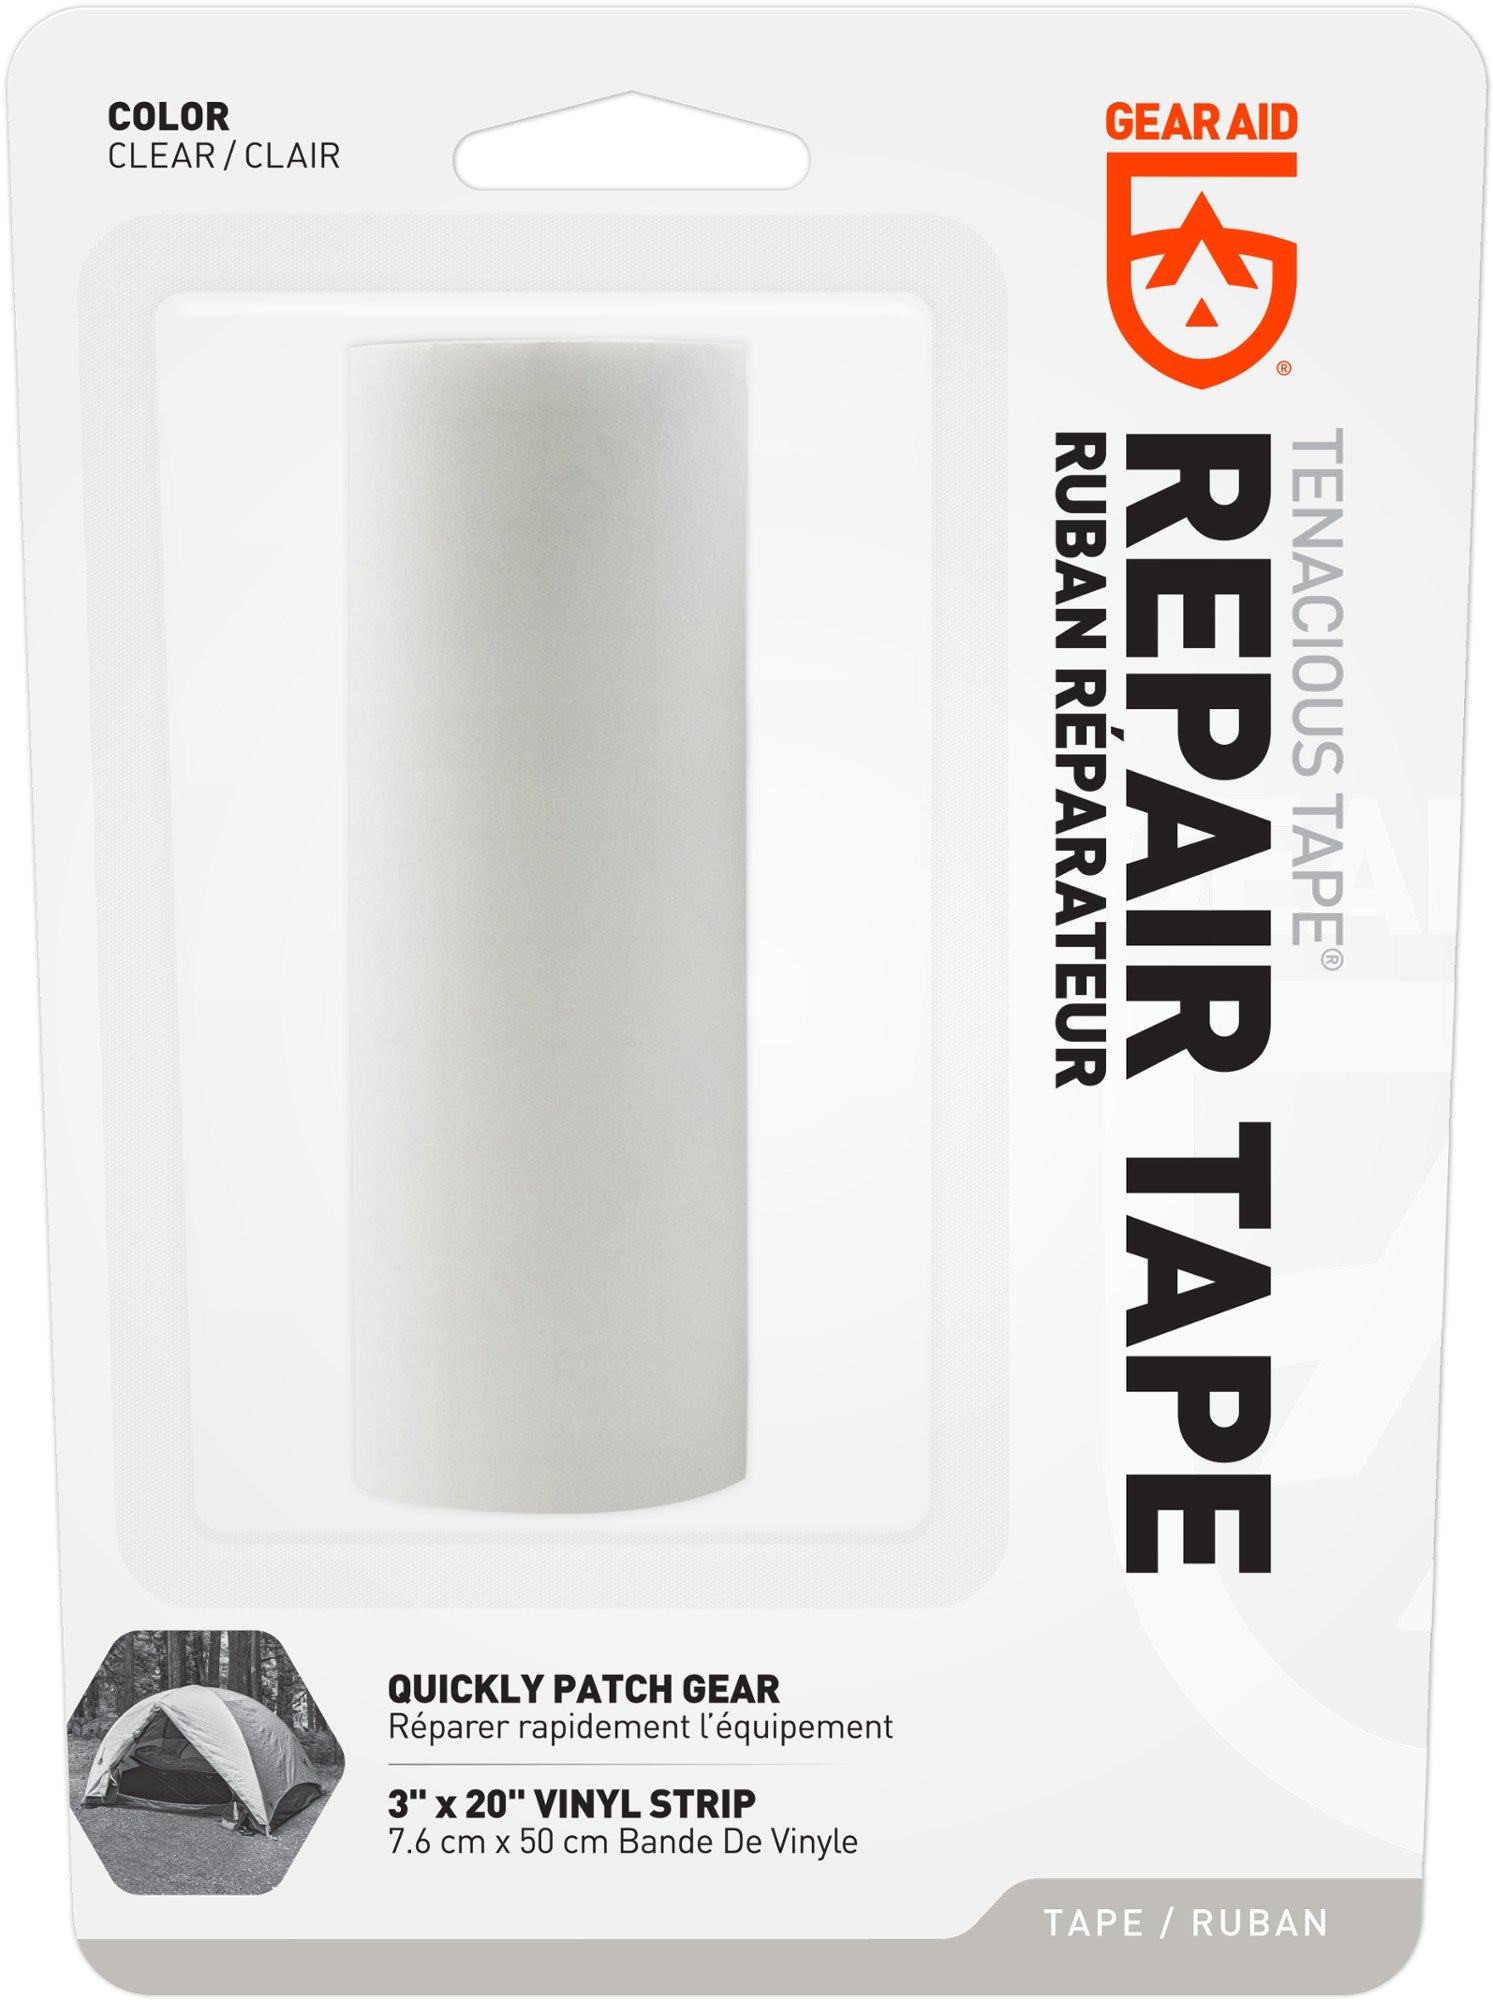 Gear Aid Tenacious Tape - 3 x 20